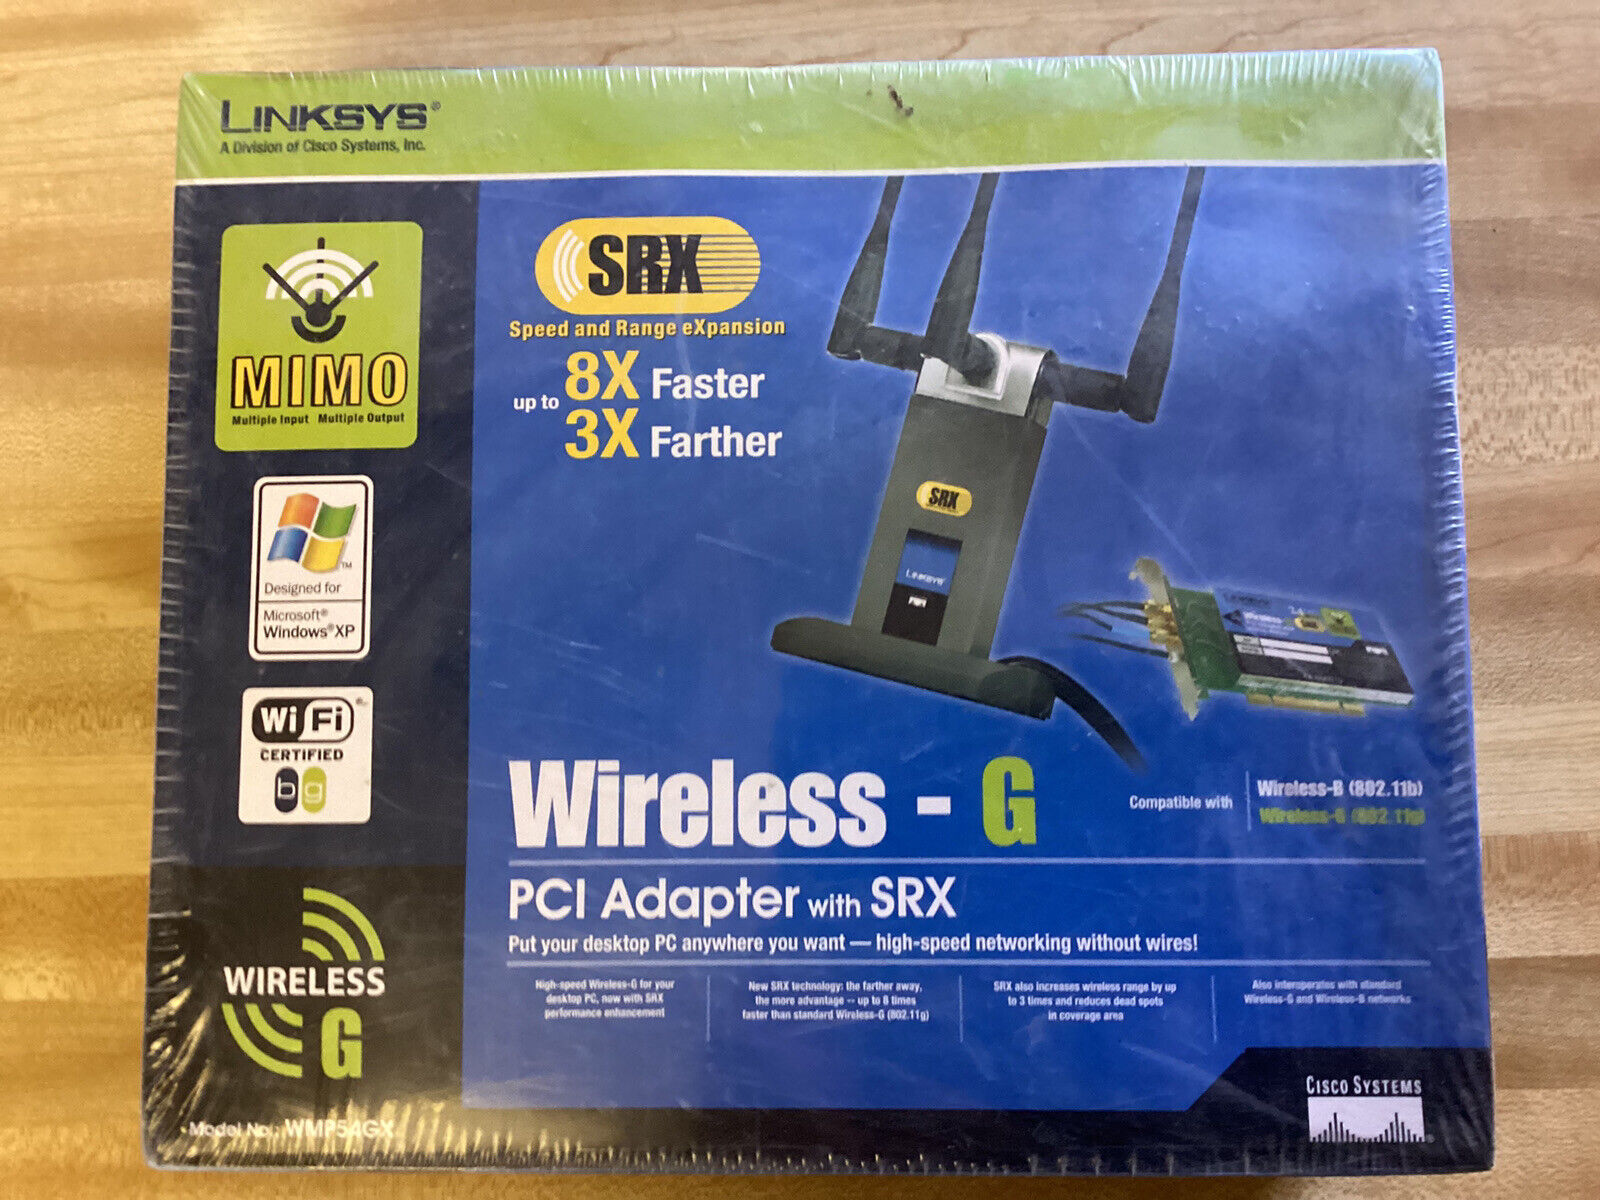 Cisco-Linksys WMP54GX Wireless G PCI Adapter with SRX 